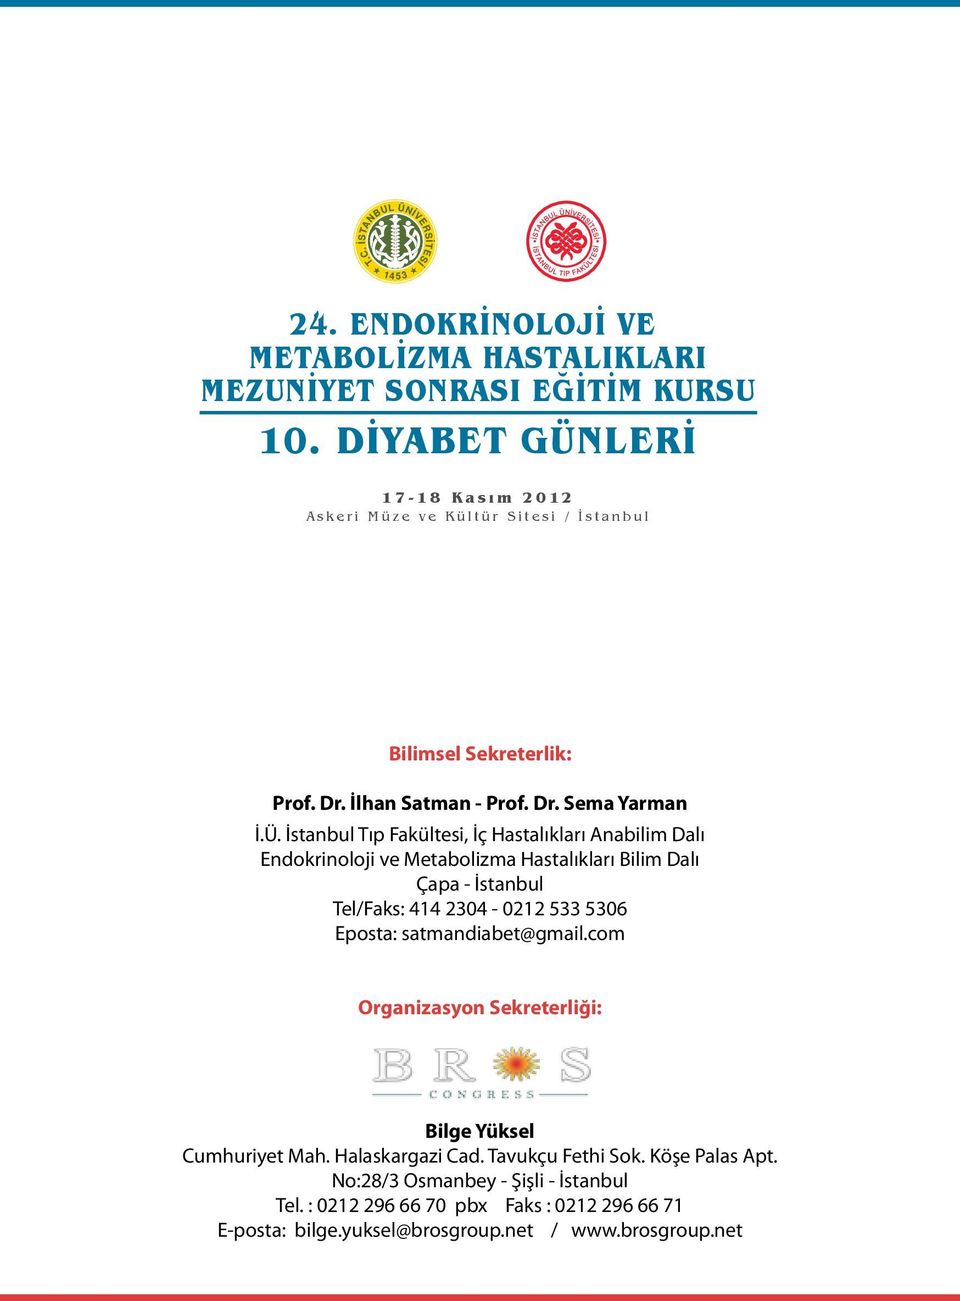 Ü. İstanbul Tıp Fakültesi, İç Hastalıkları Anabilim Dalı Endokrinoloji ve Metabolizma Hastalıkları Bilim Dalı Çapa - İstanbul Tel/Faks: 414 2304-0212 533 5306 Eposta: